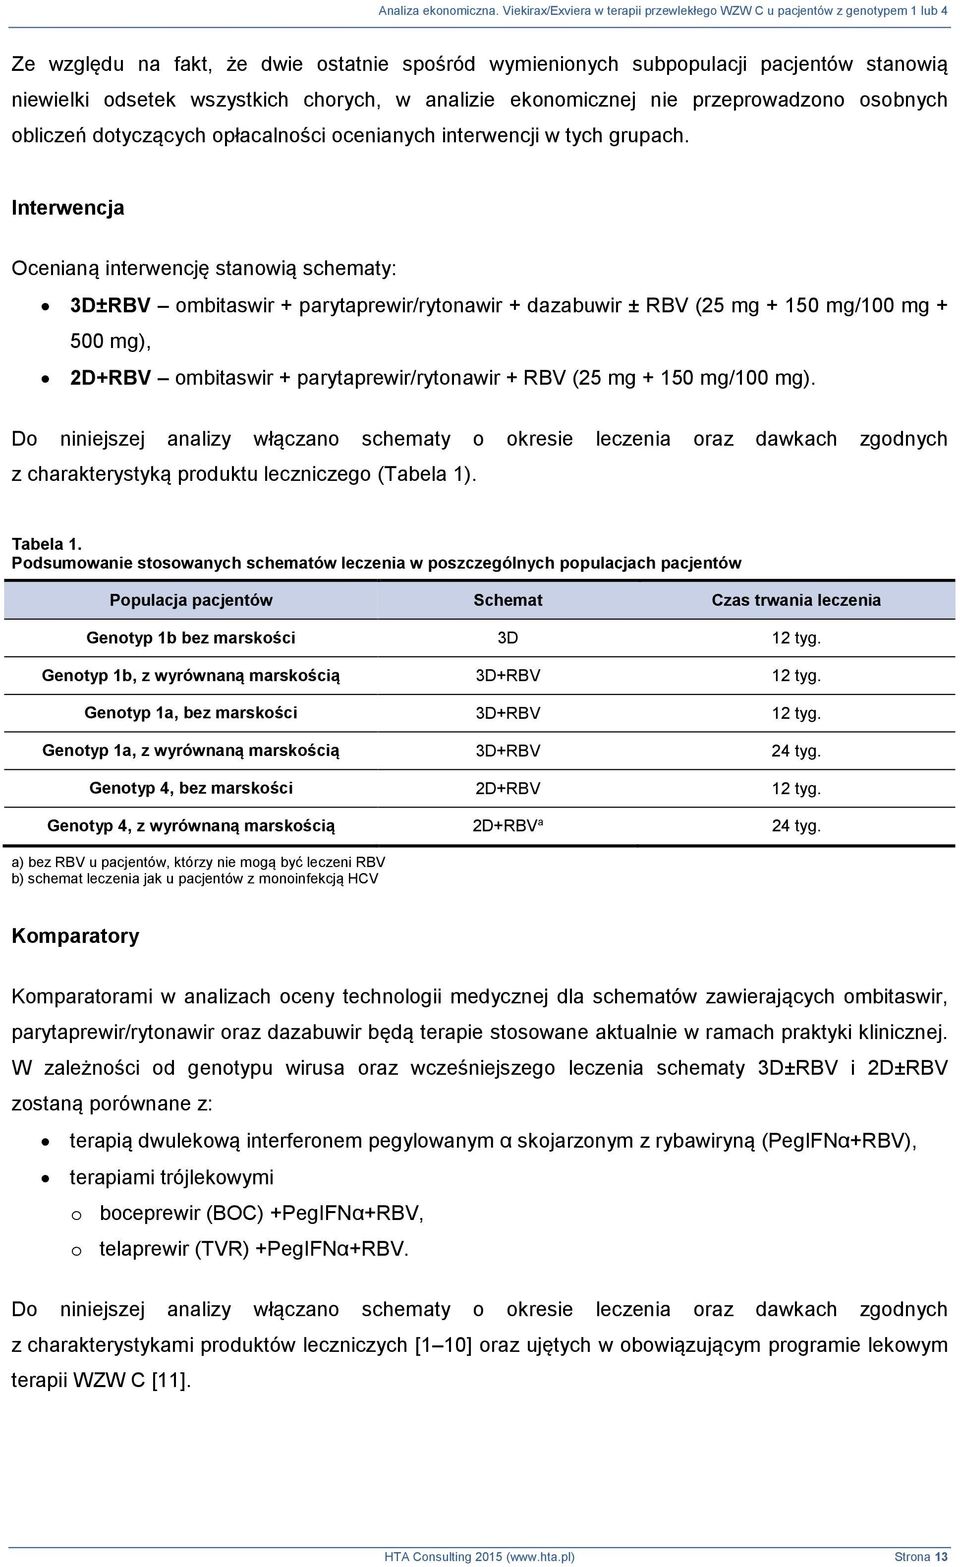 Interwencja Ocenianą interwencję stanowią schematy: 3D±RBV ombitaswir + parytaprewir/rytonawir + dazabuwir ± RBV (25 mg + 150 mg/100 mg + 500 mg), 2D+RBV ombitaswir + parytaprewir/rytonawir + RBV (25